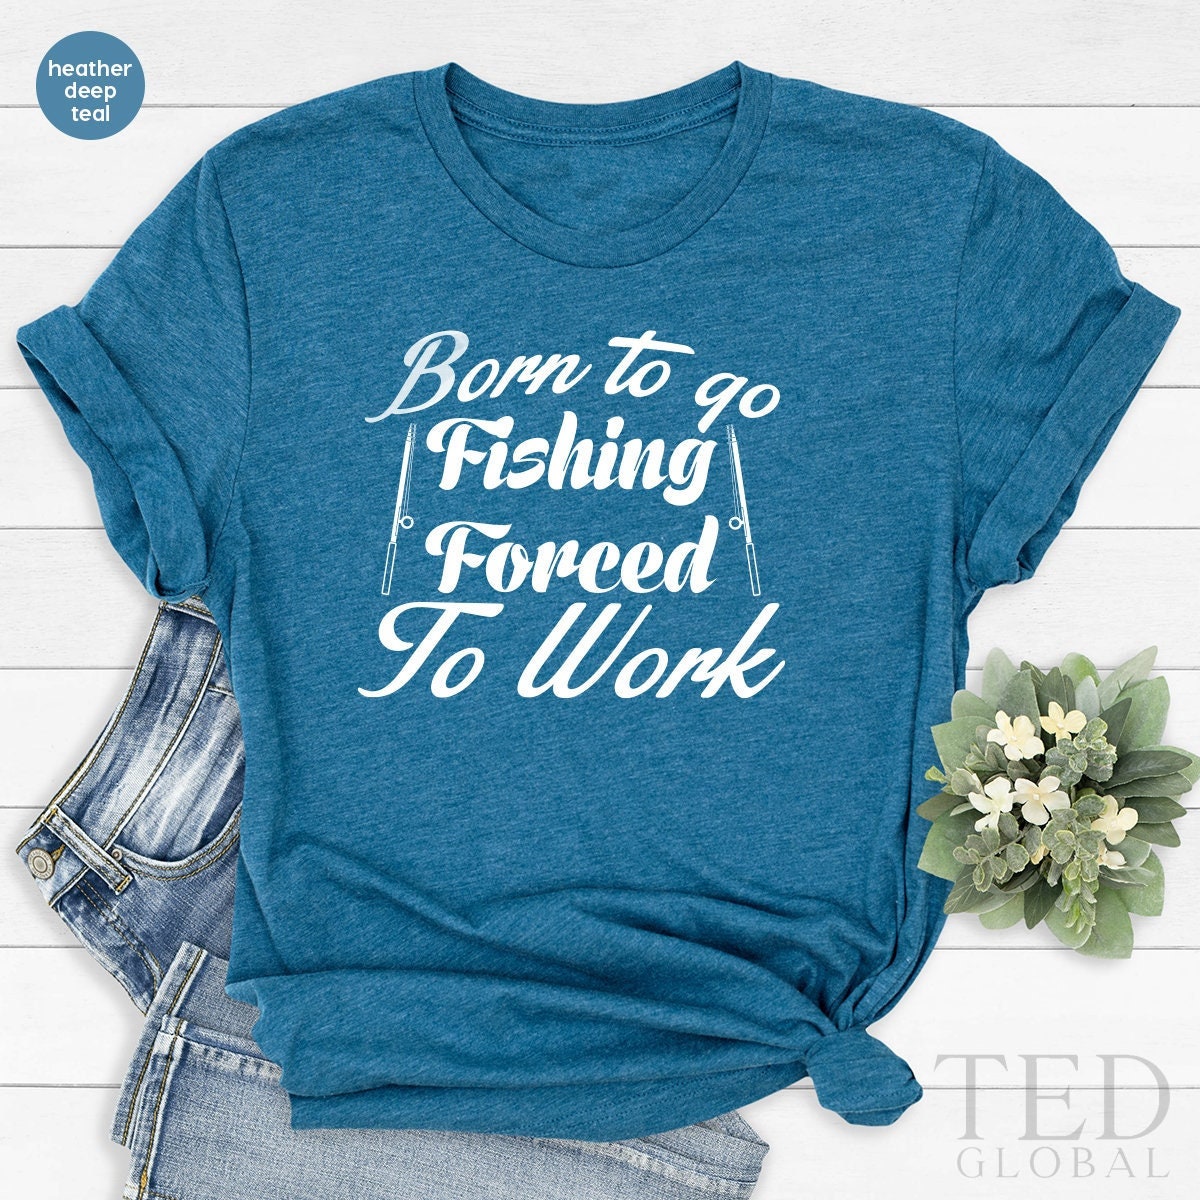 Fishing Is A Tough Job - Funny Fishing Shirt #9 Women's T-Shirt by